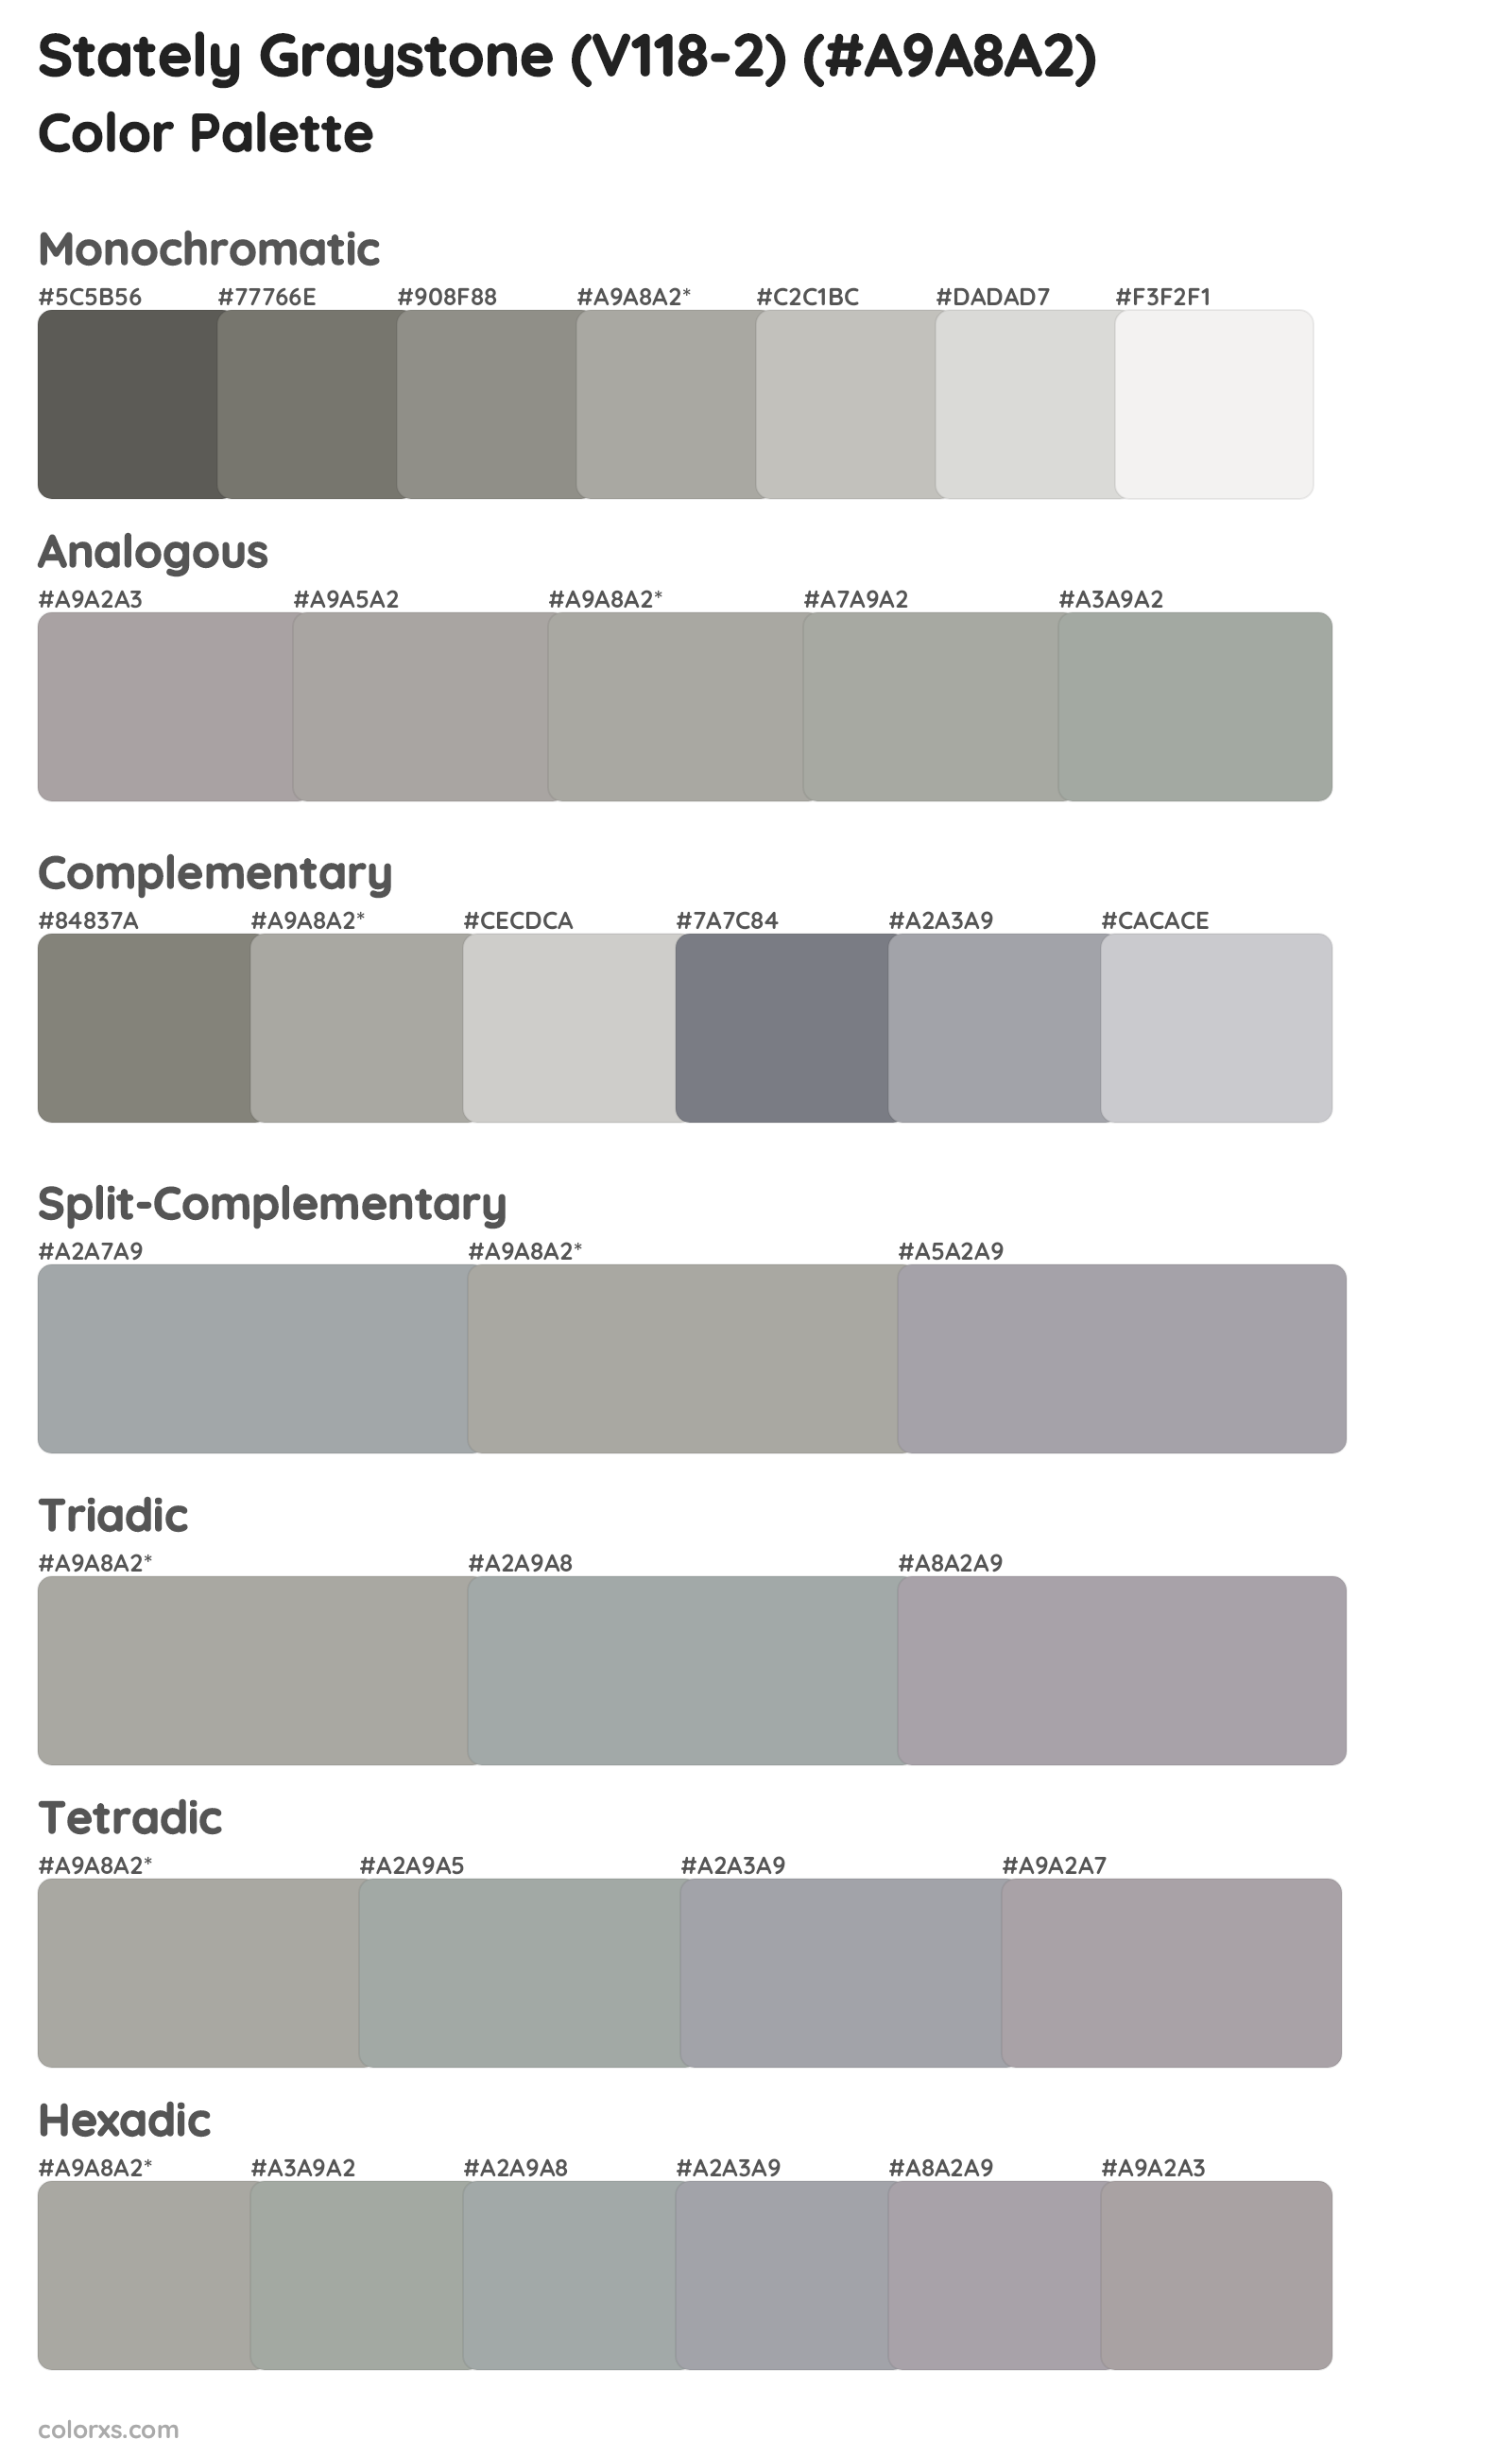 Stately Graystone (V118-2) Color Scheme Palettes